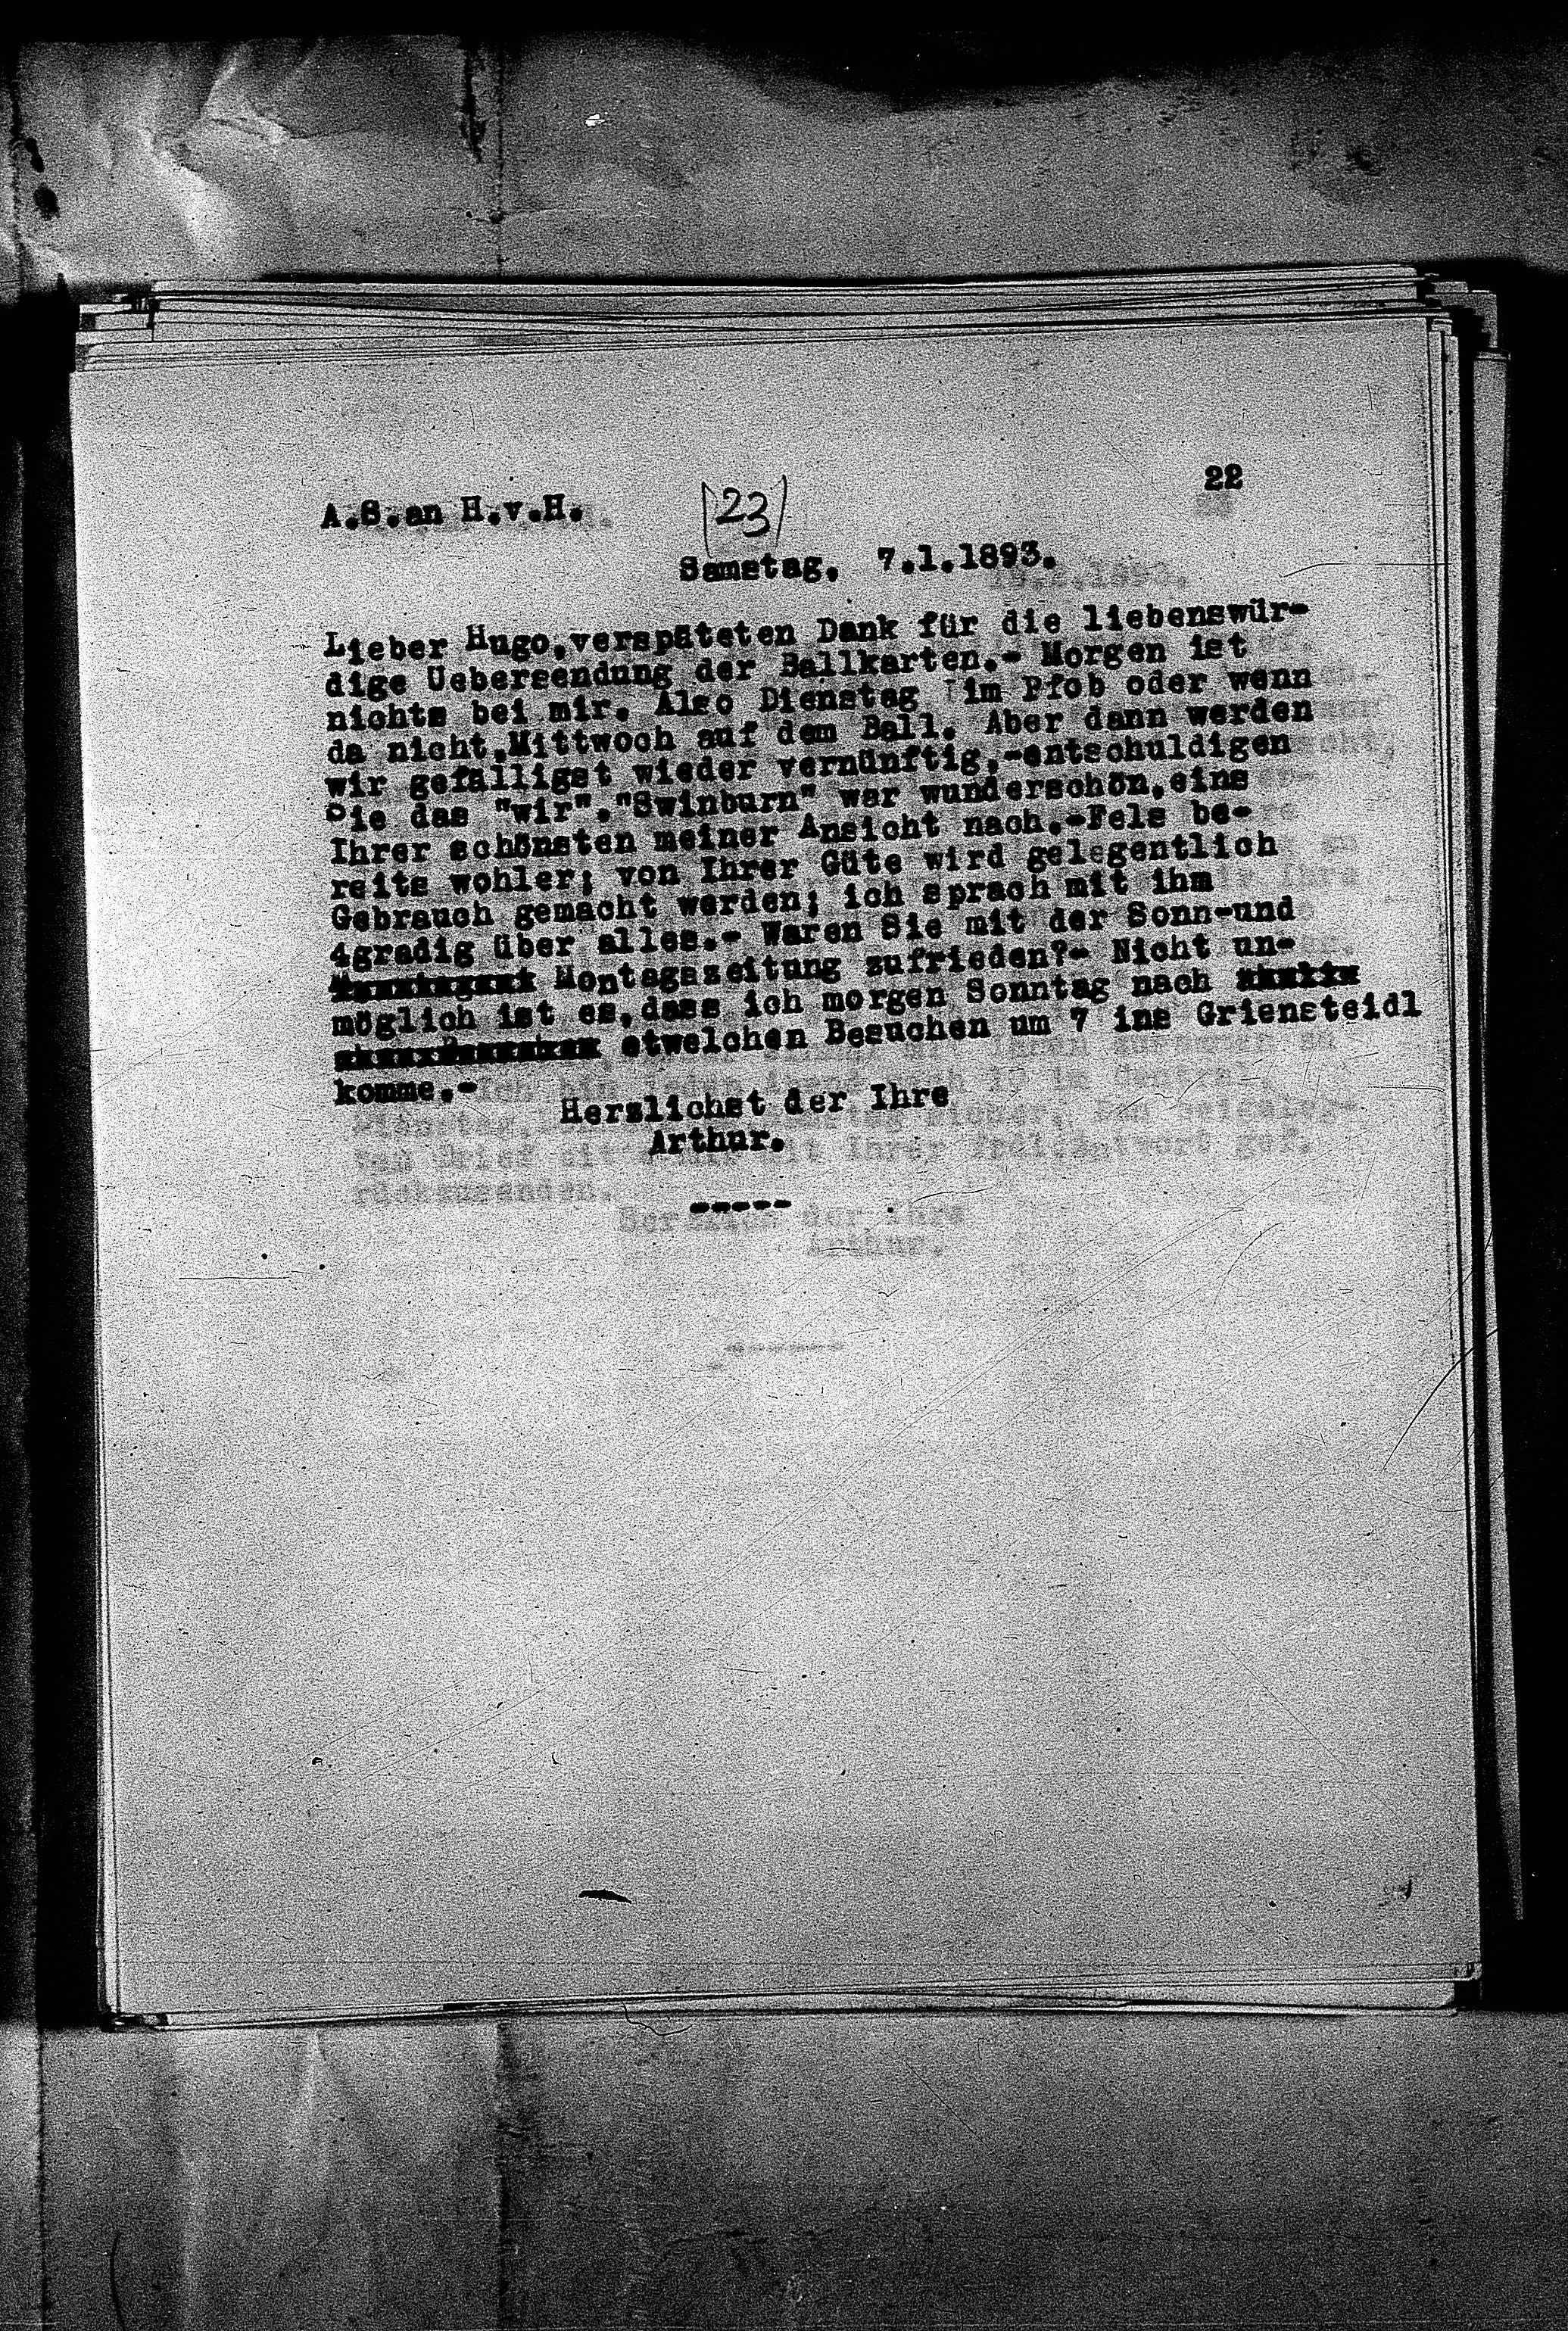 Vorschaubild für Hofmannsthal, Hugo von_AS an HvH Abschrift, HvH an AS, Originale (Mikrofilm 38), Seite 25